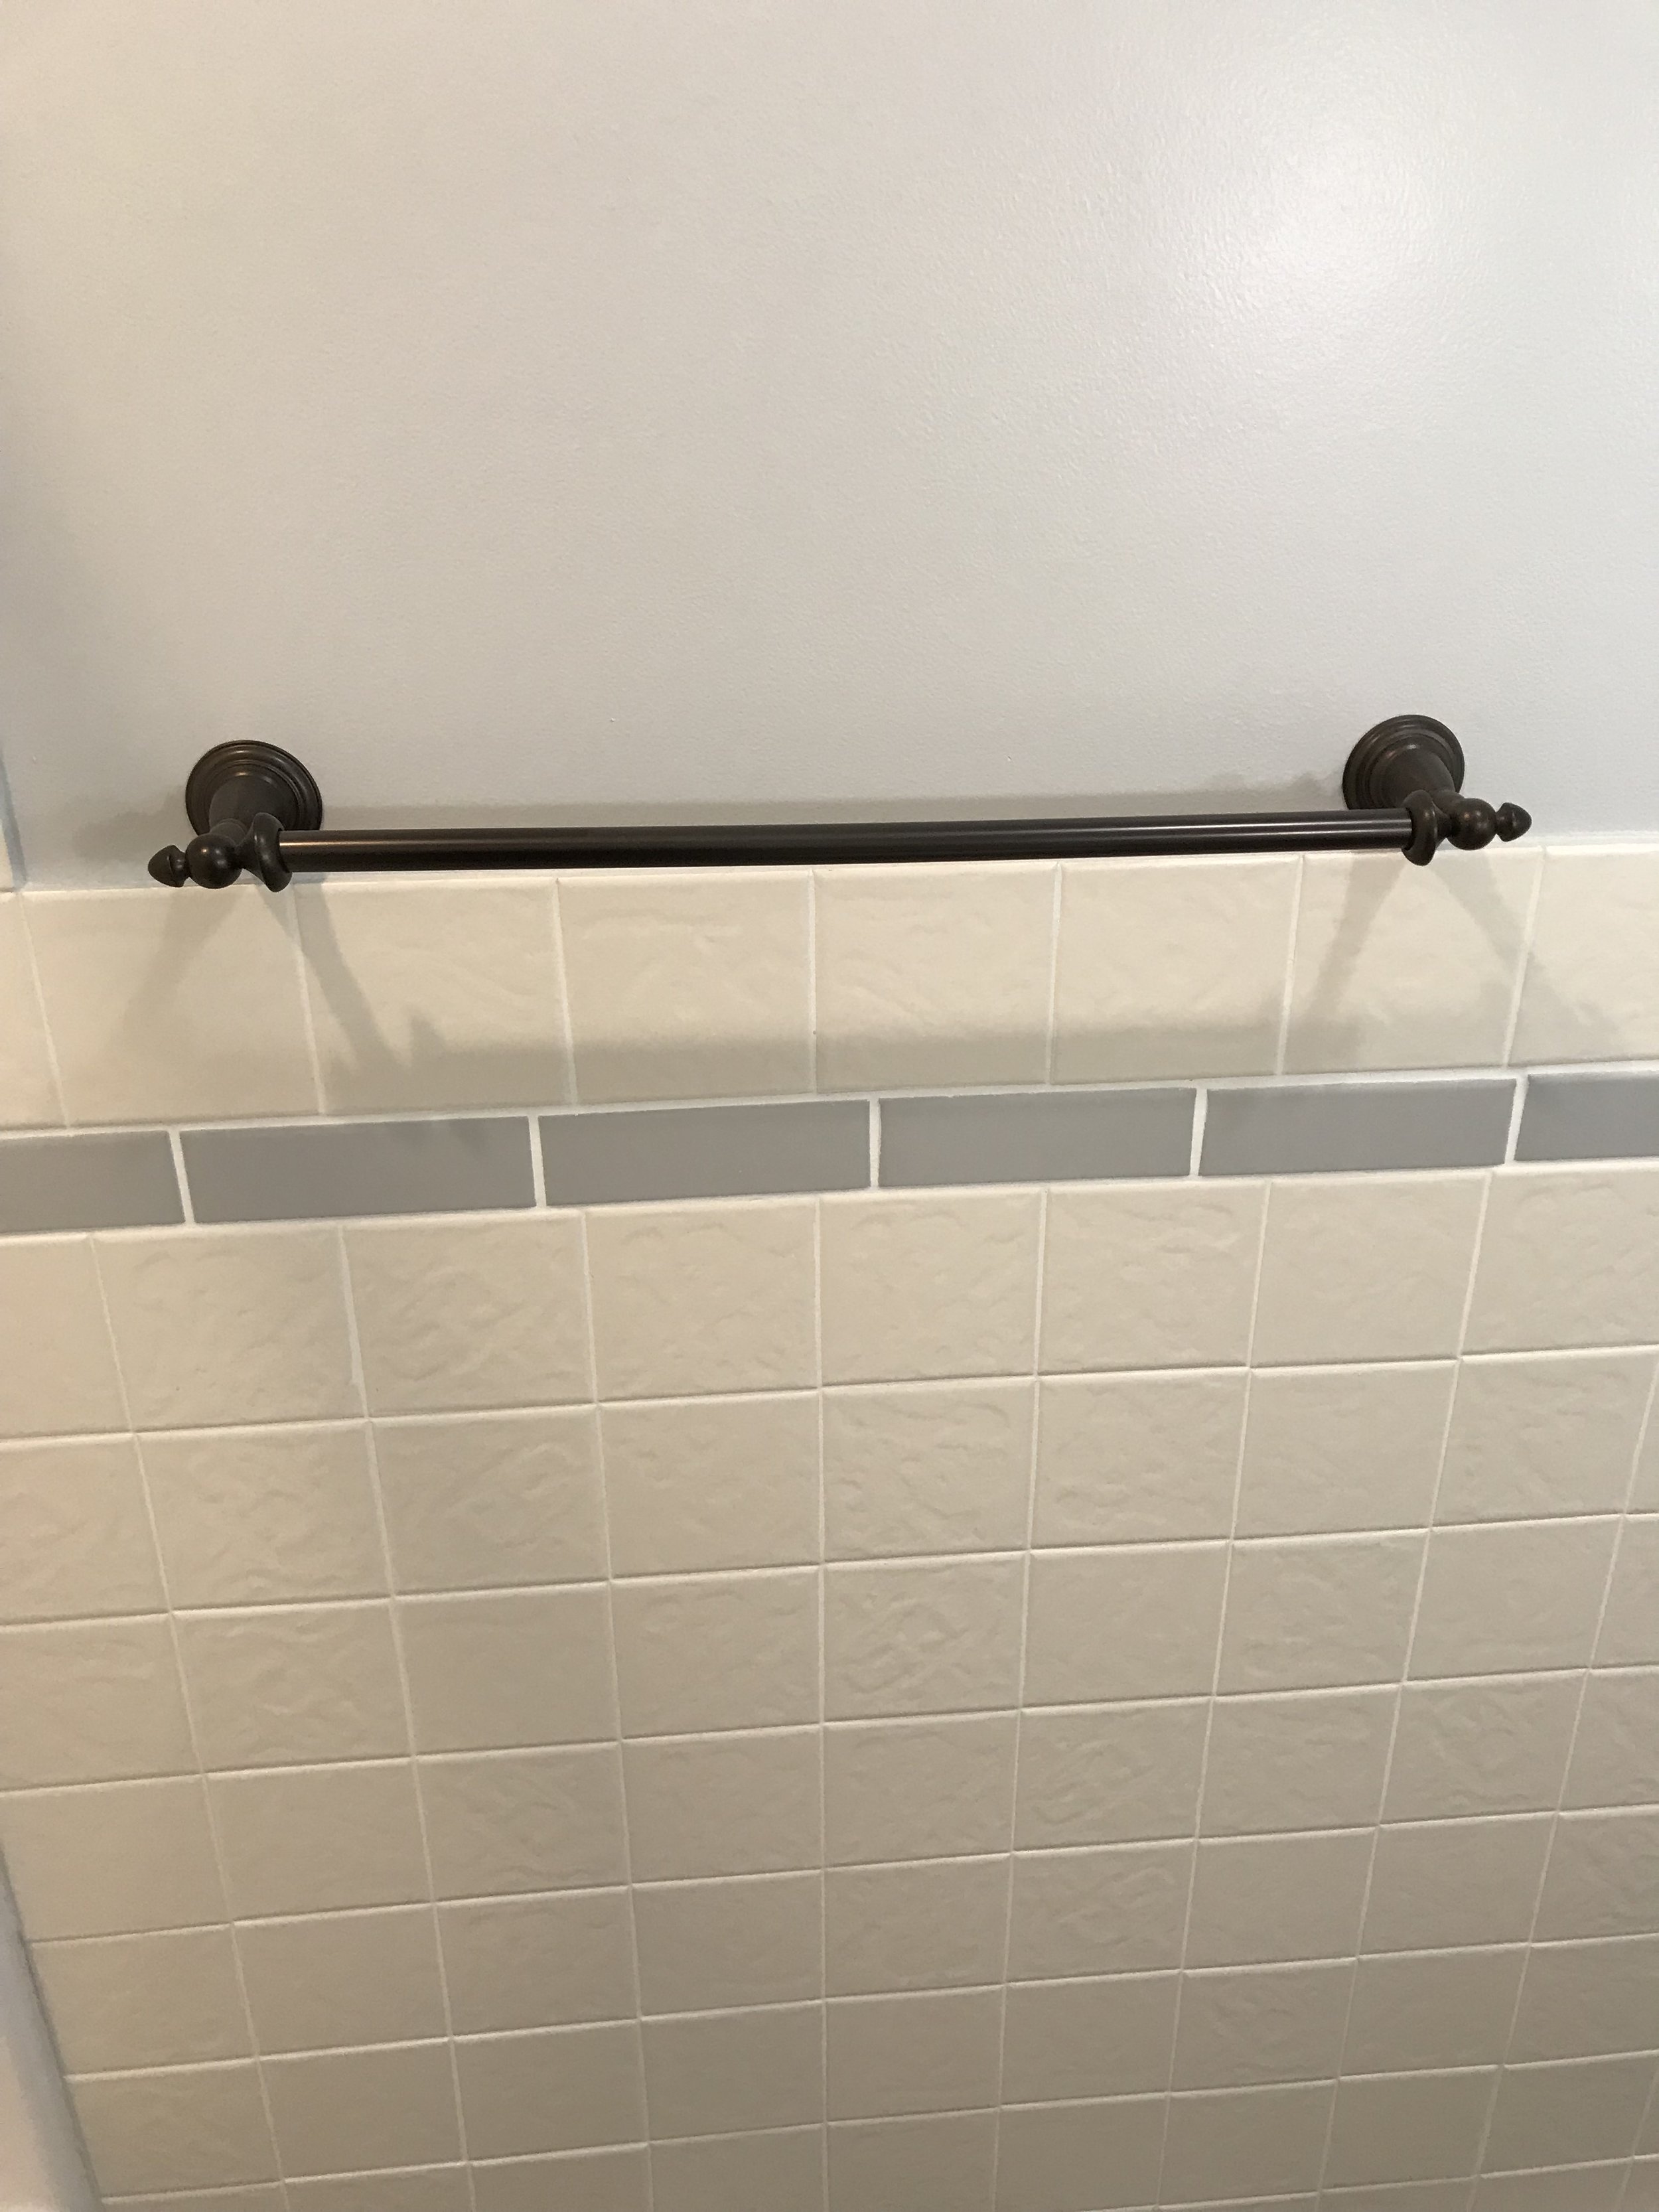 Upgraded bath fixtures